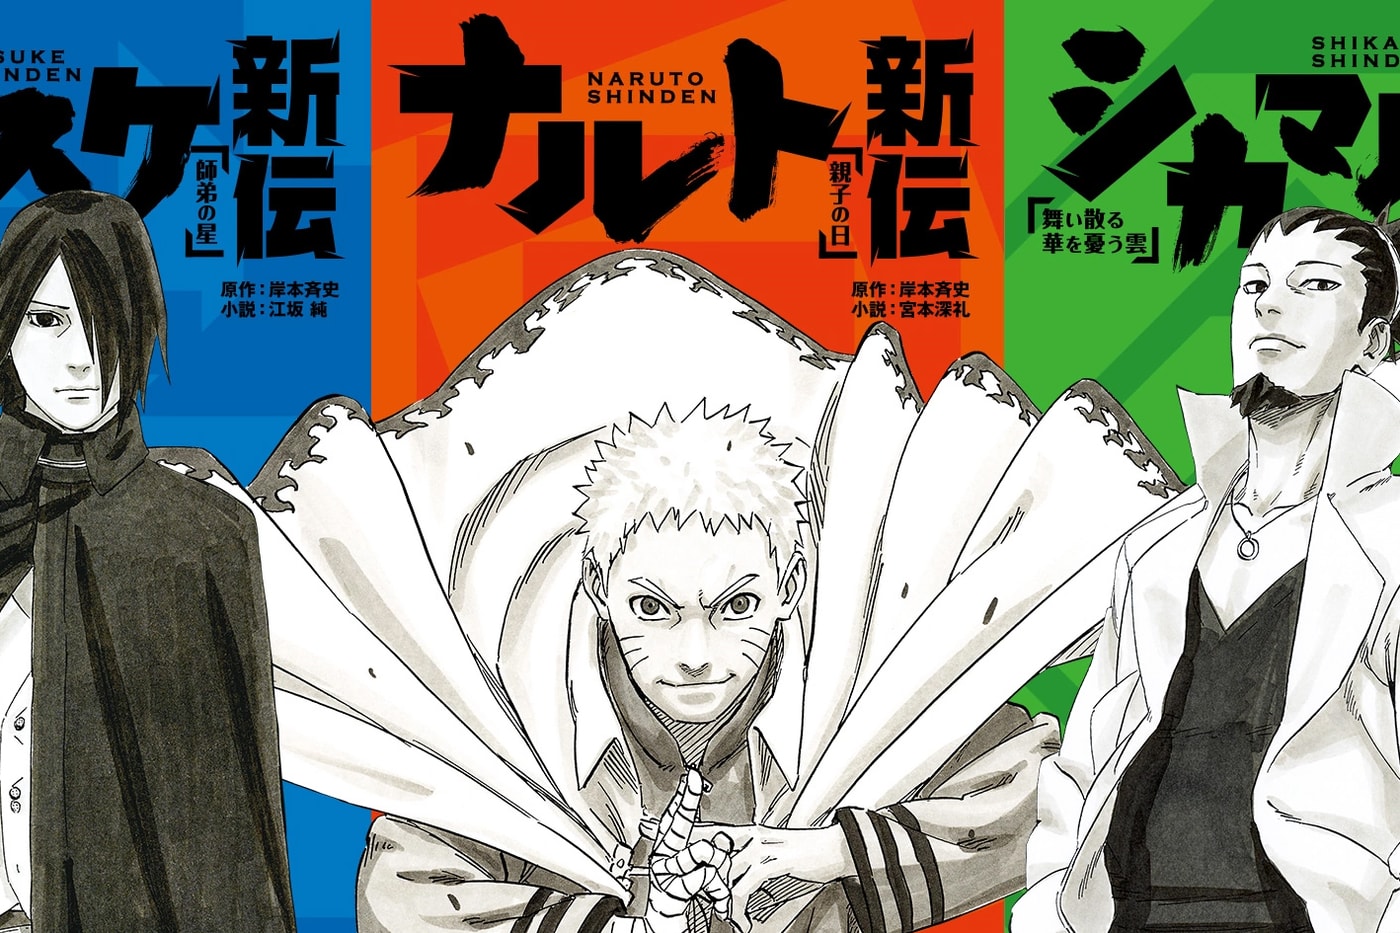 Naruto Shinden Anime Adaptation Announcement Spin off series Boruto Sasuke Shikamaru The New Legend of Naruto Masashi Kishimoto Boruto